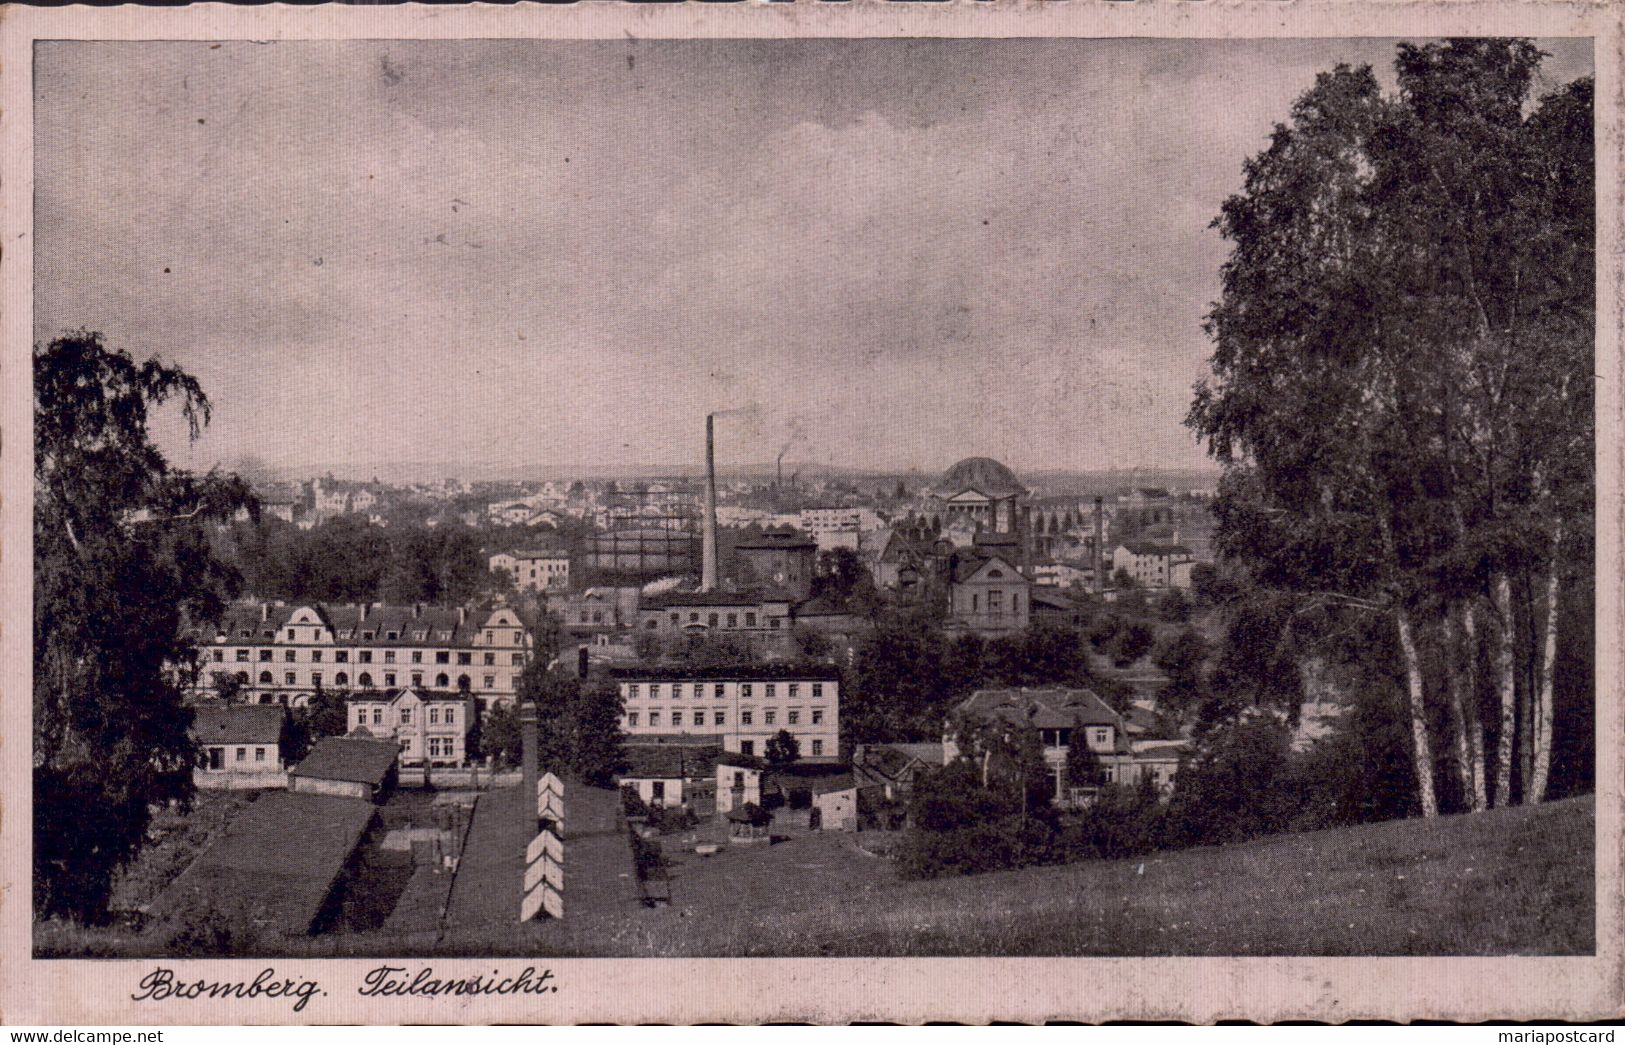 Bromberg, Teilansicht. Jukrobrom, 239. 1941. - Polen